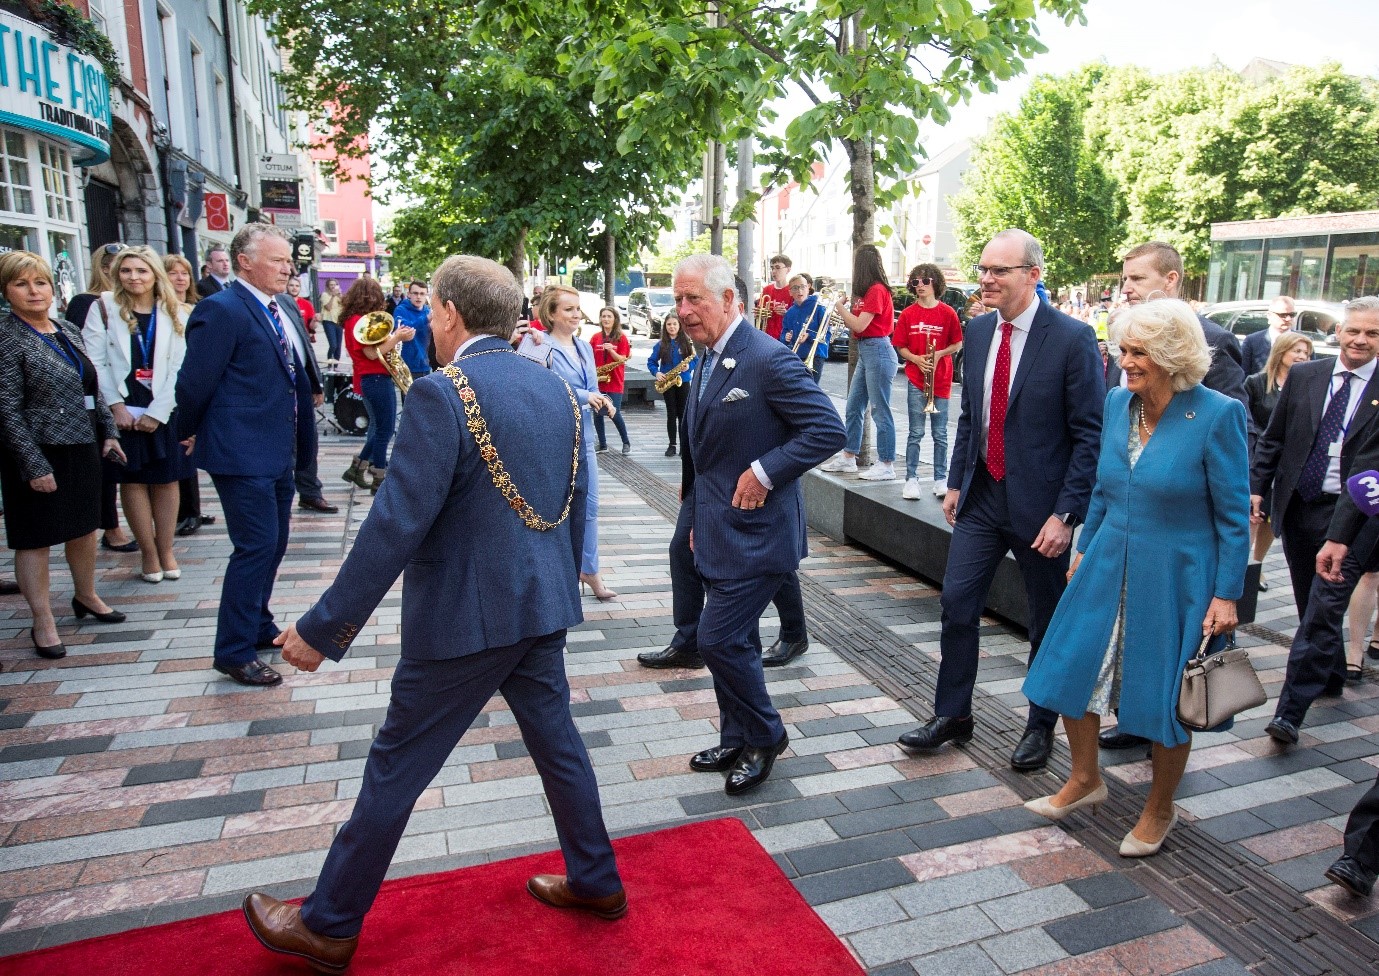 Prince Charles visiting Cork